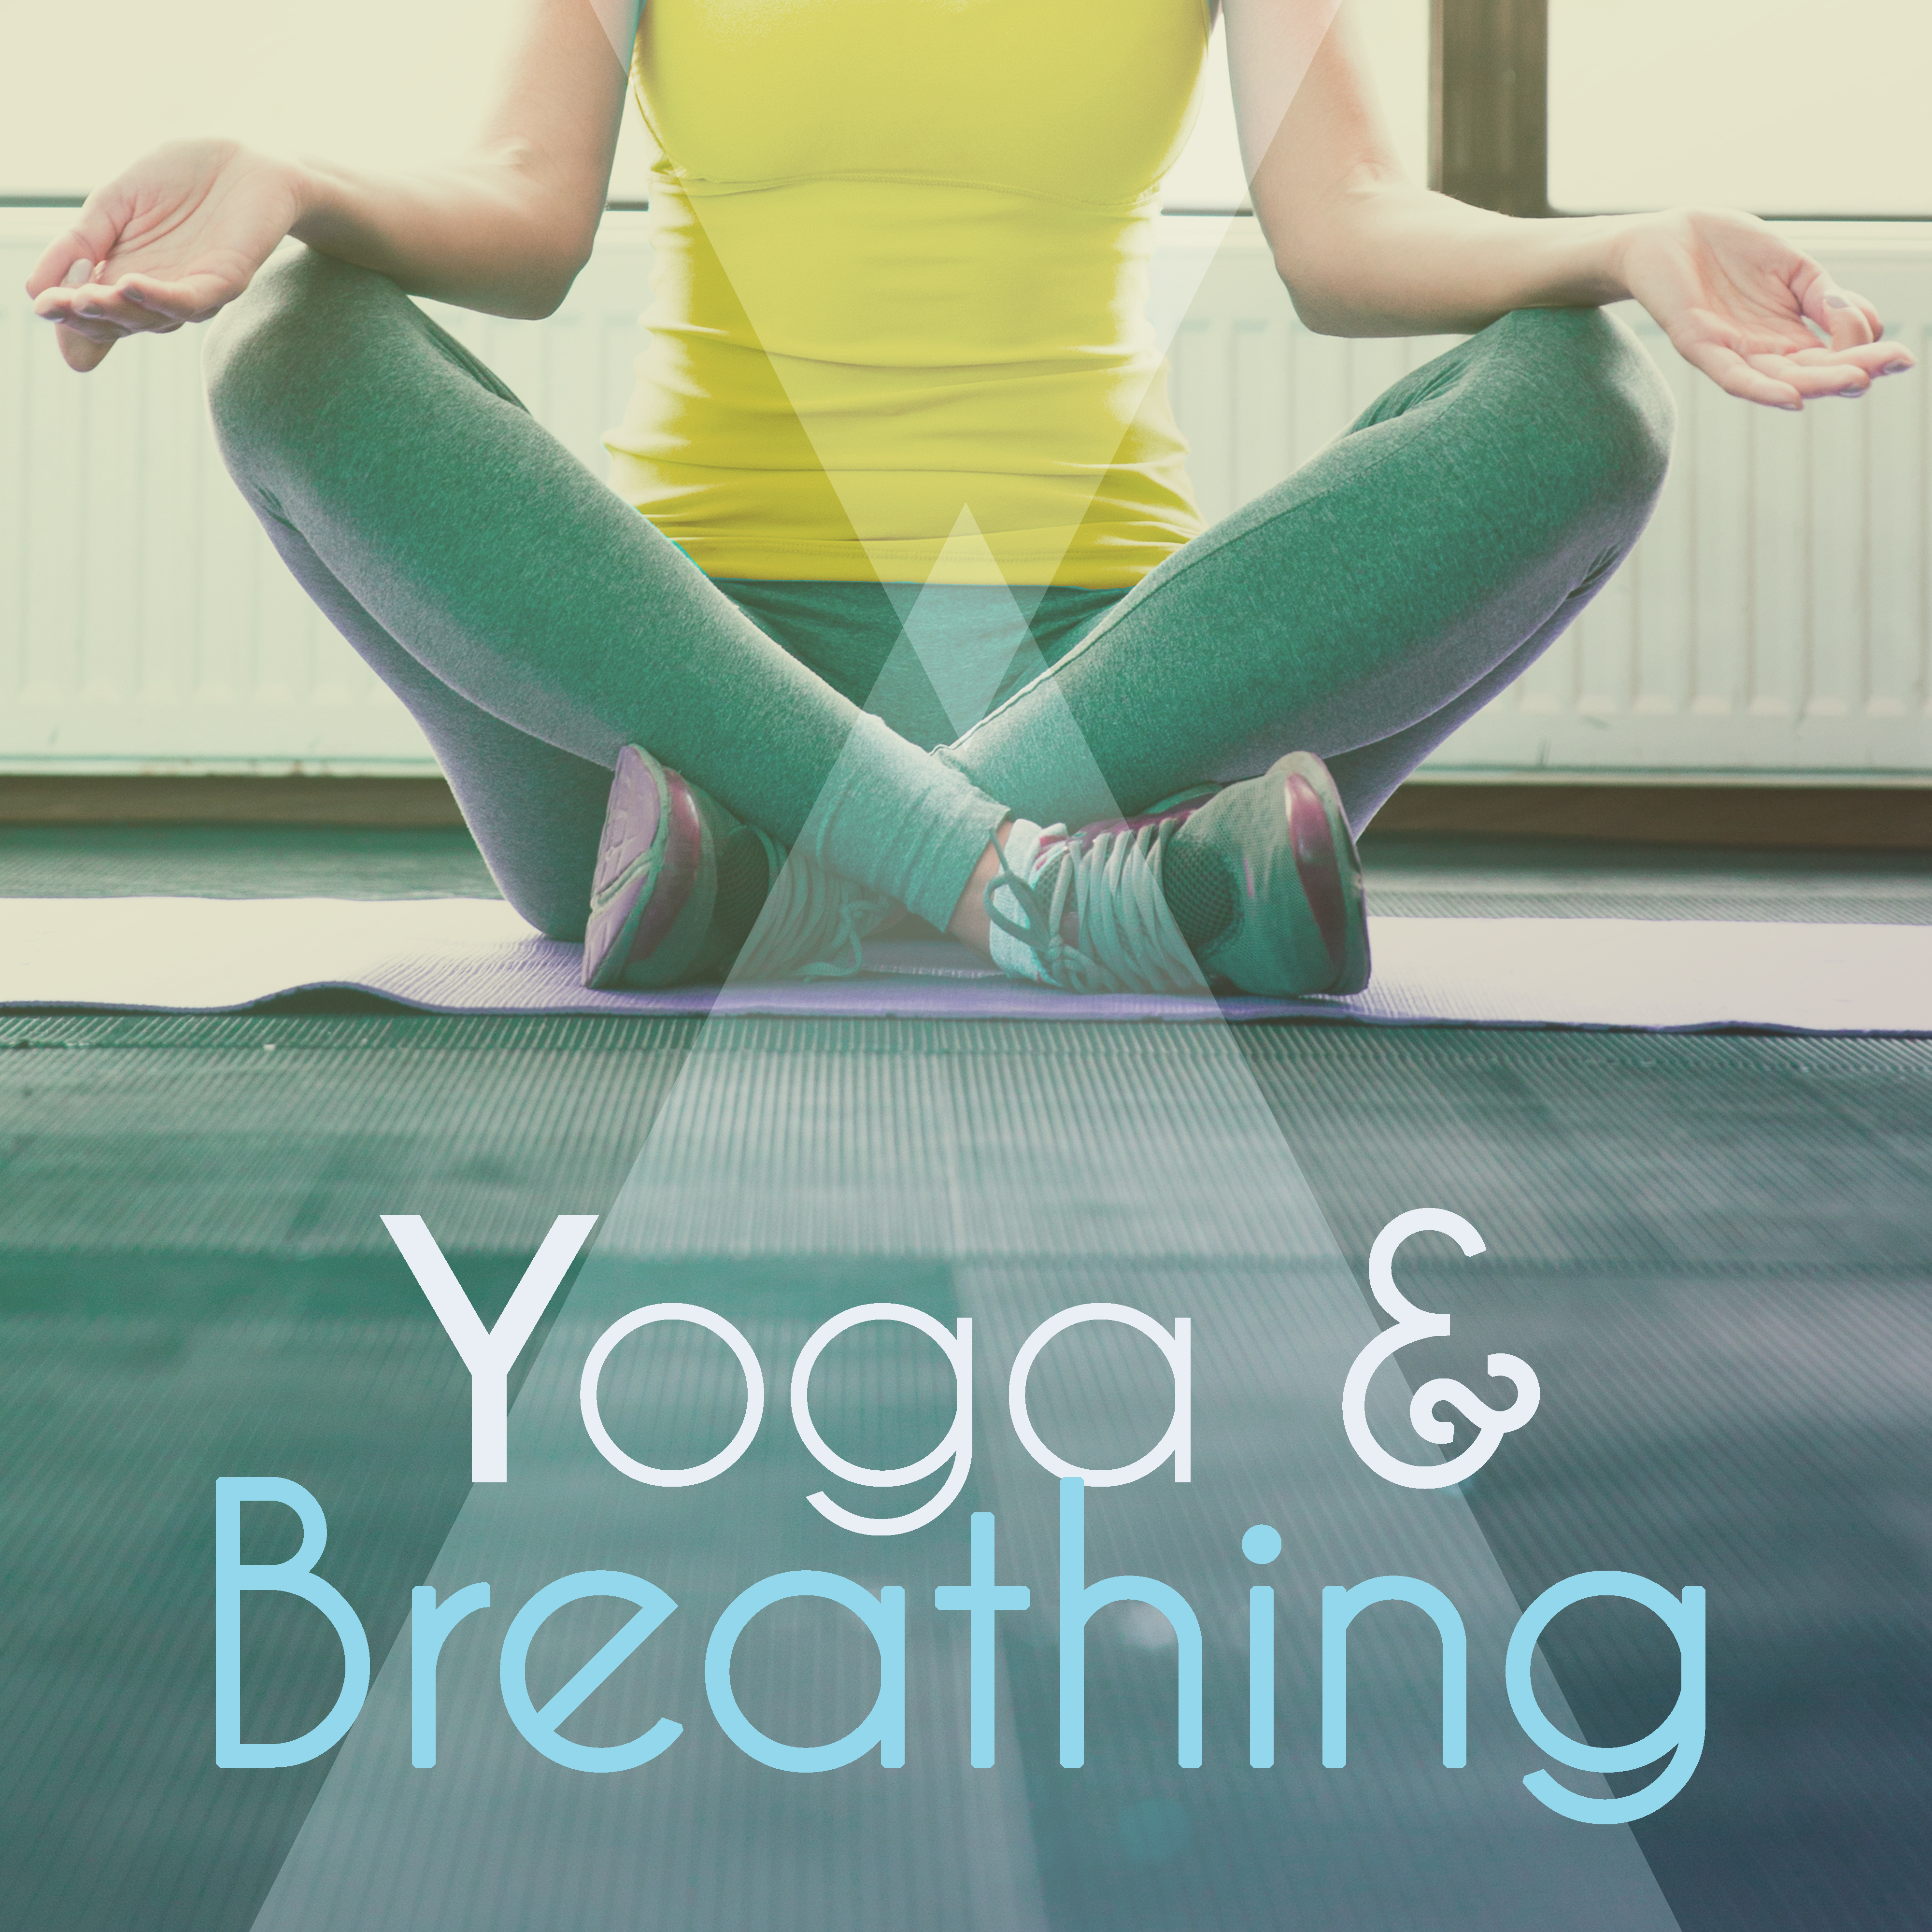 Yoga & Breathing – Peaceful Nature Sleep, Yoga Meditation, New Age, Pilates, Meditation, Yoga Background Music